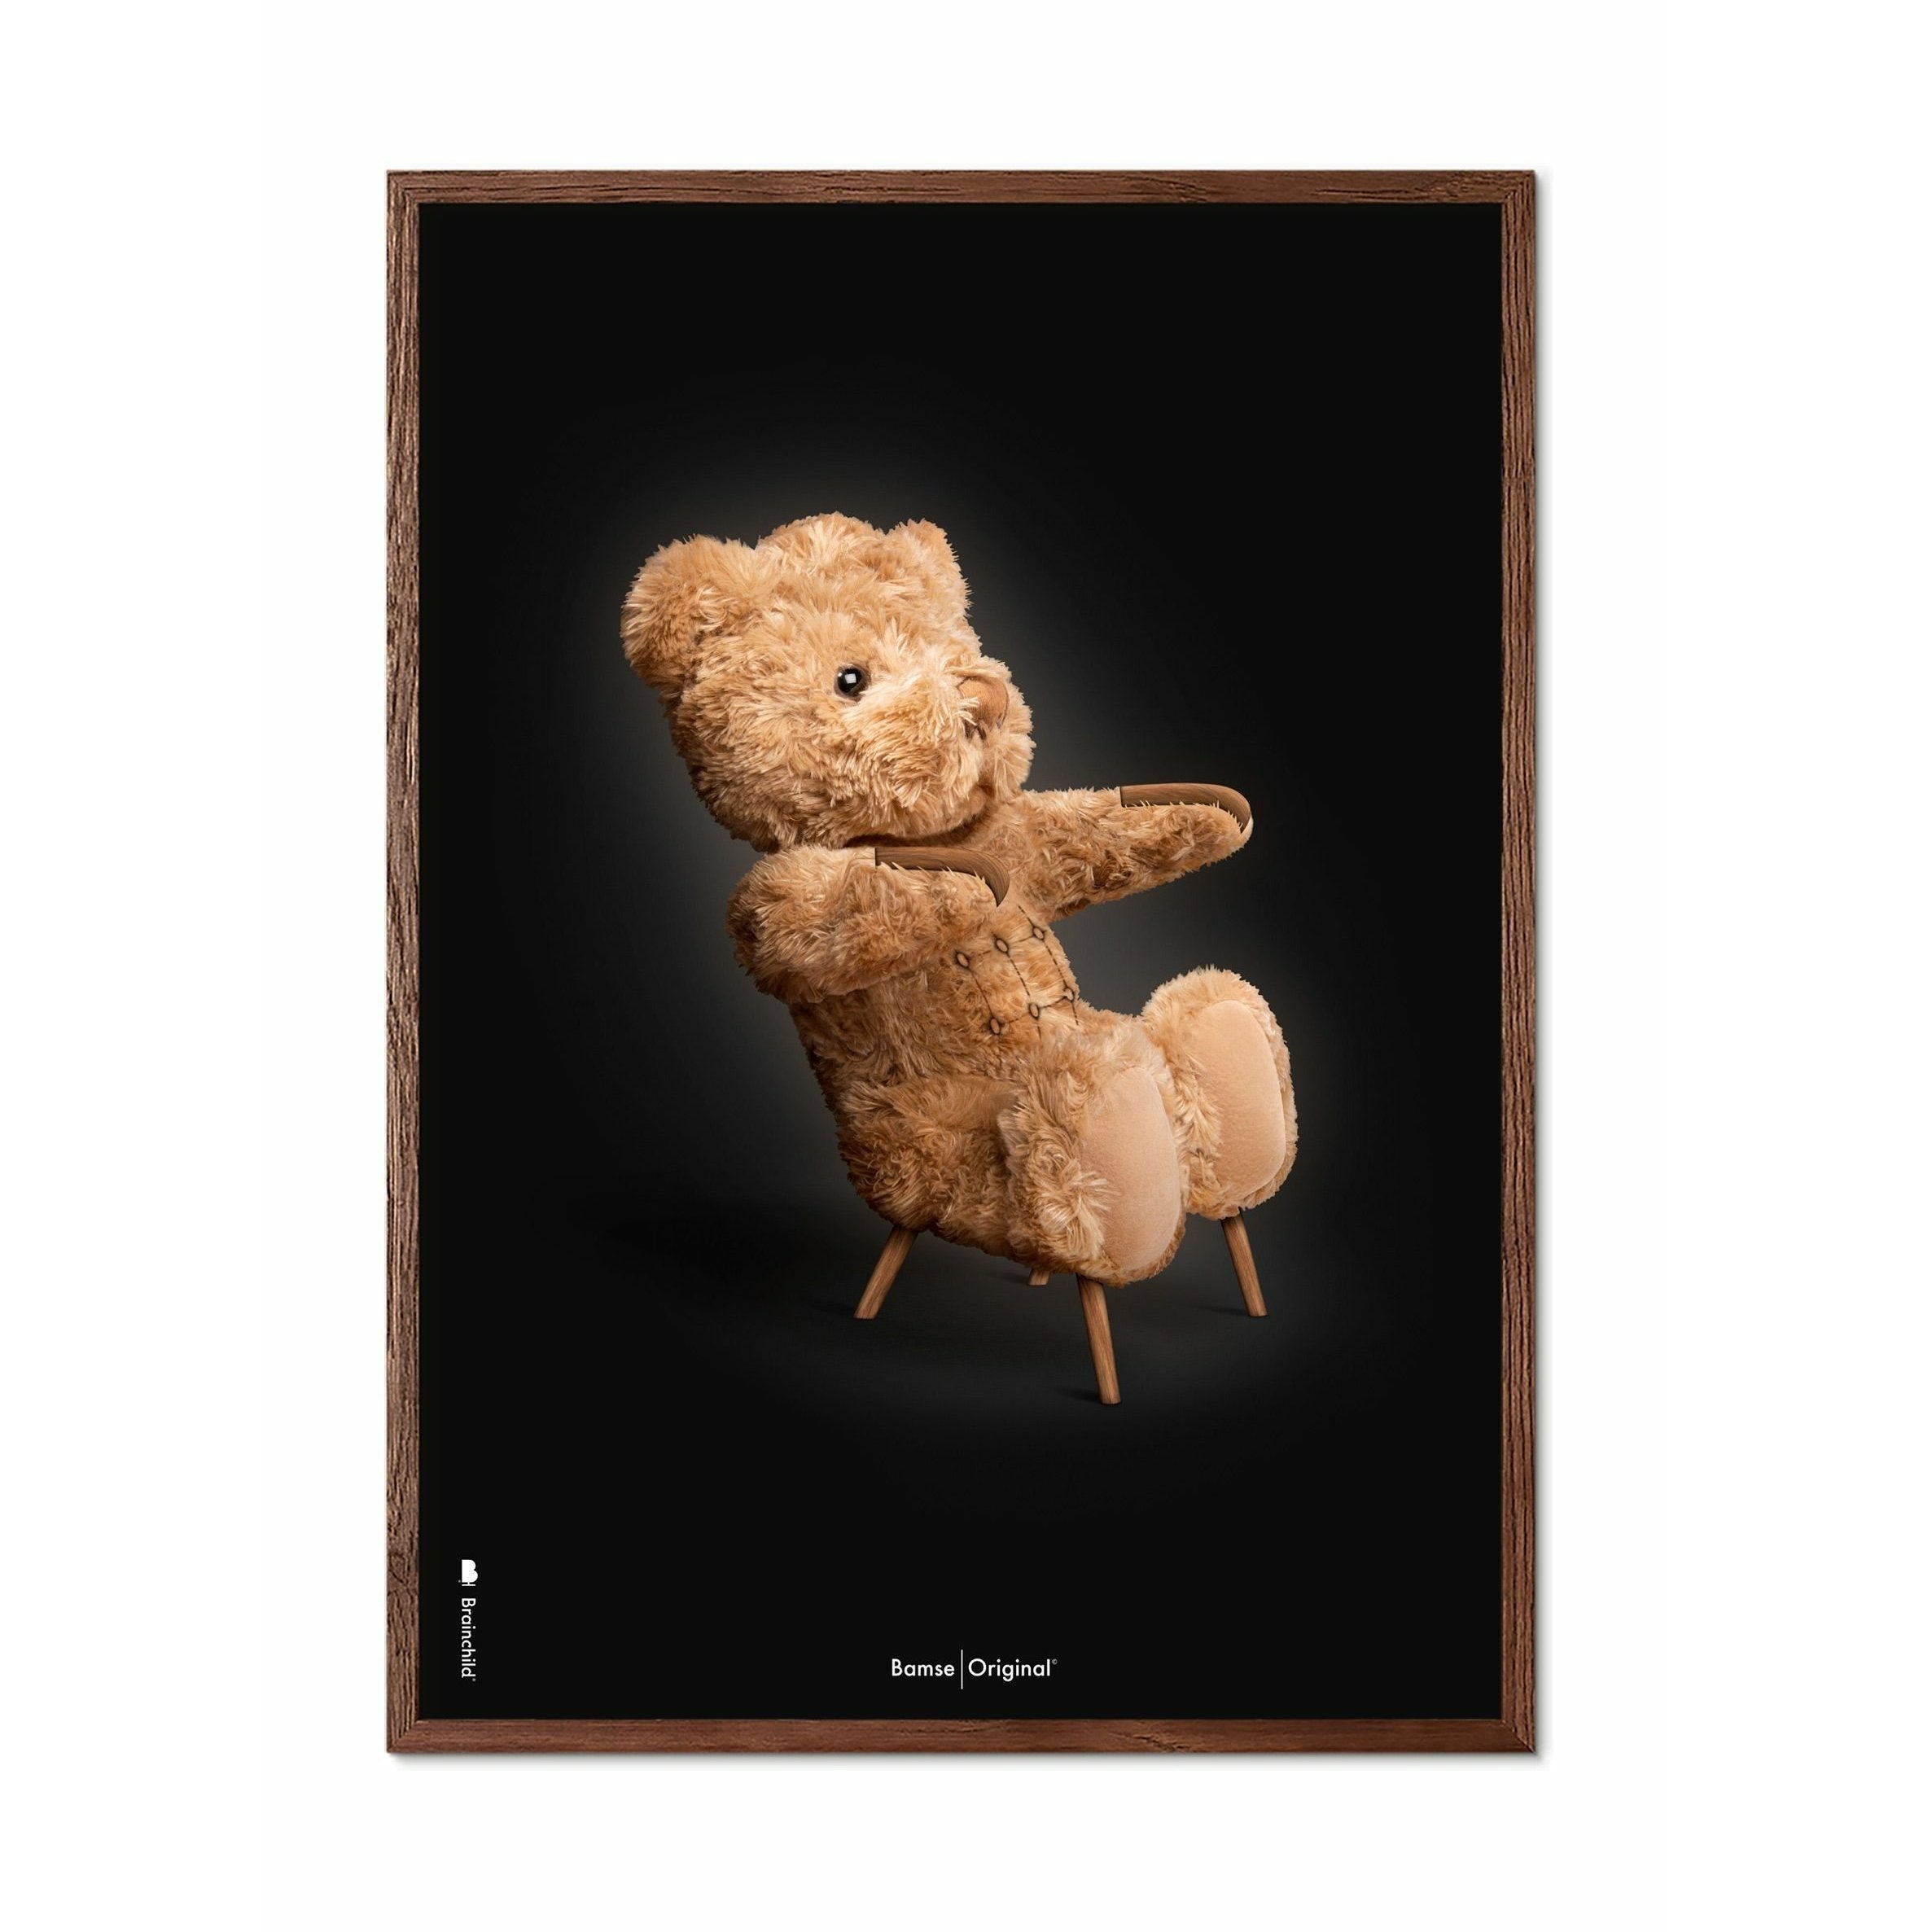 Brainchild Teddy Bear Classic Poster, Frame Made of Dark Wood 50x70 cm, svart bakgrunn